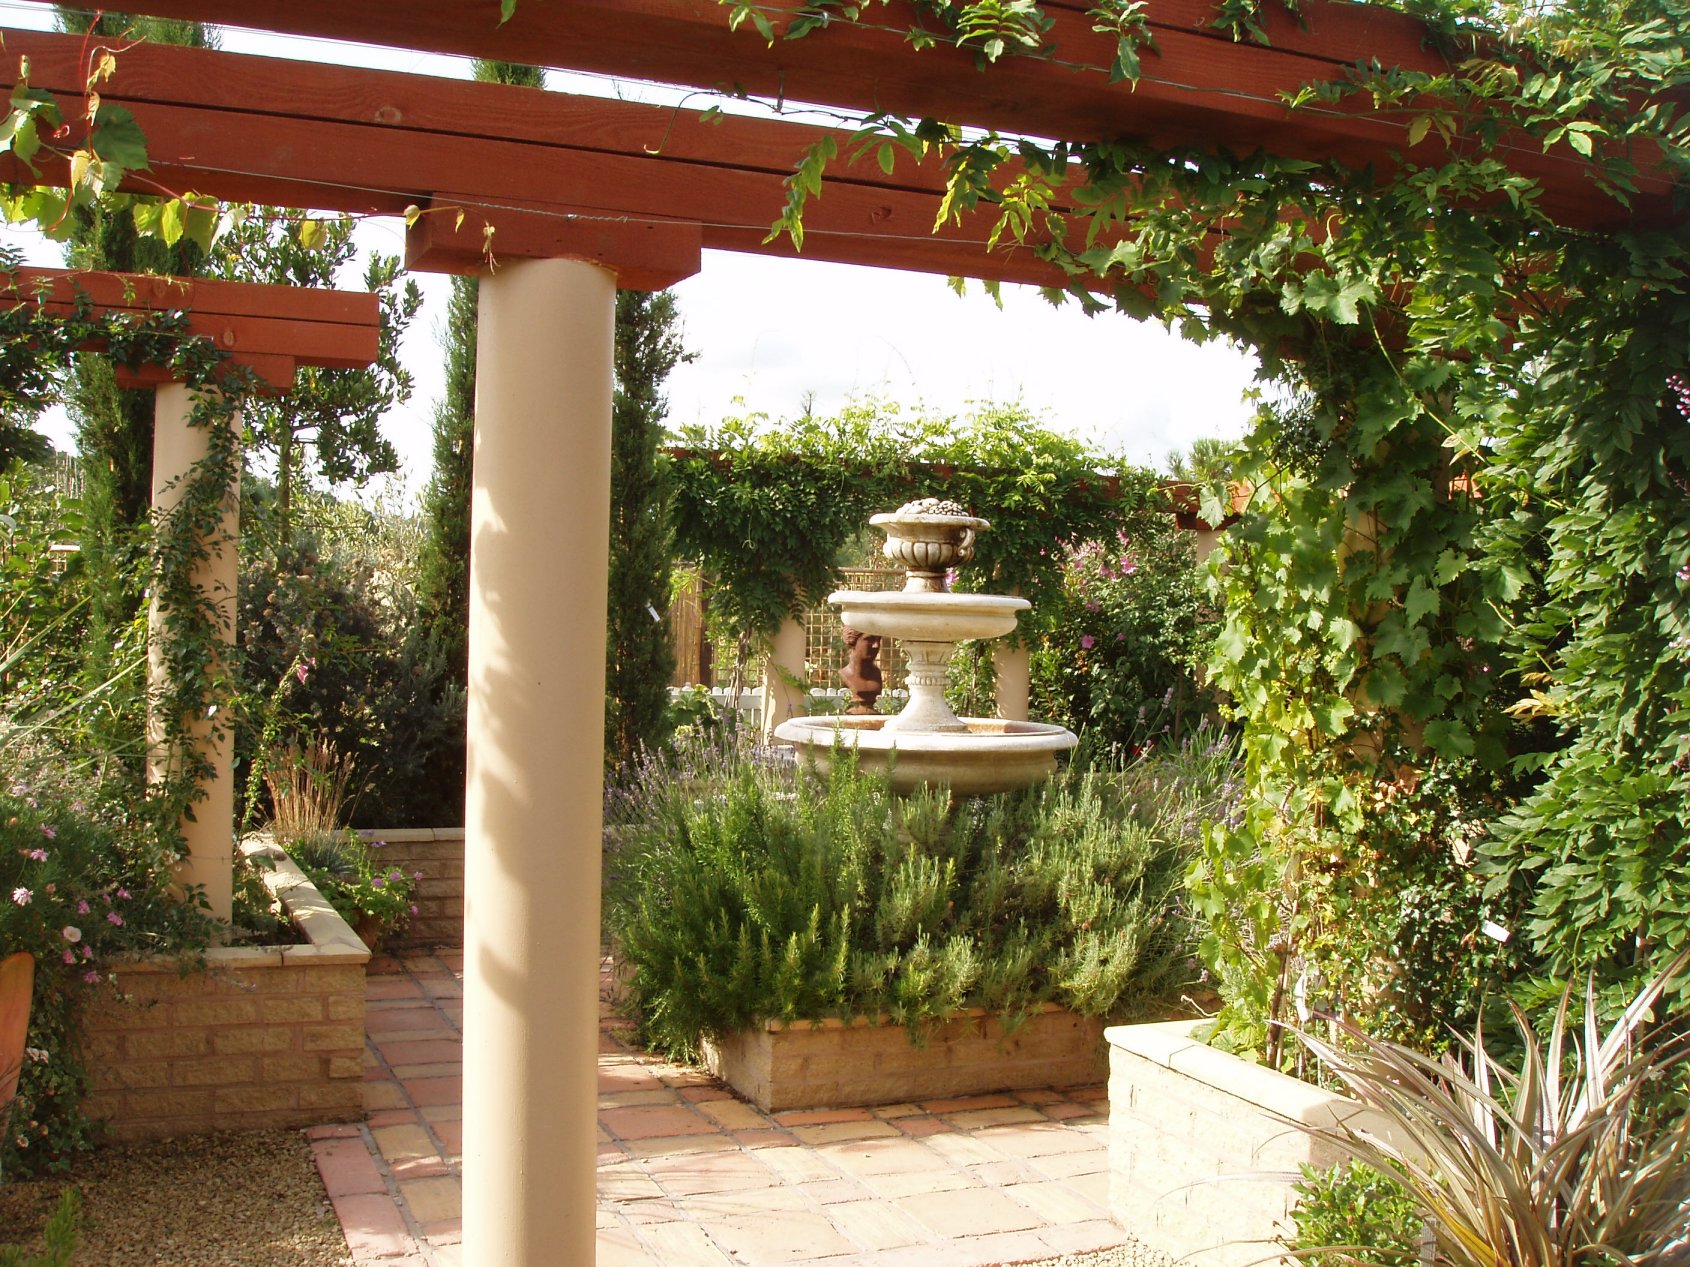 Italian Garden Design Ideas to Make Exquisite Roman Era Garden | Ideas